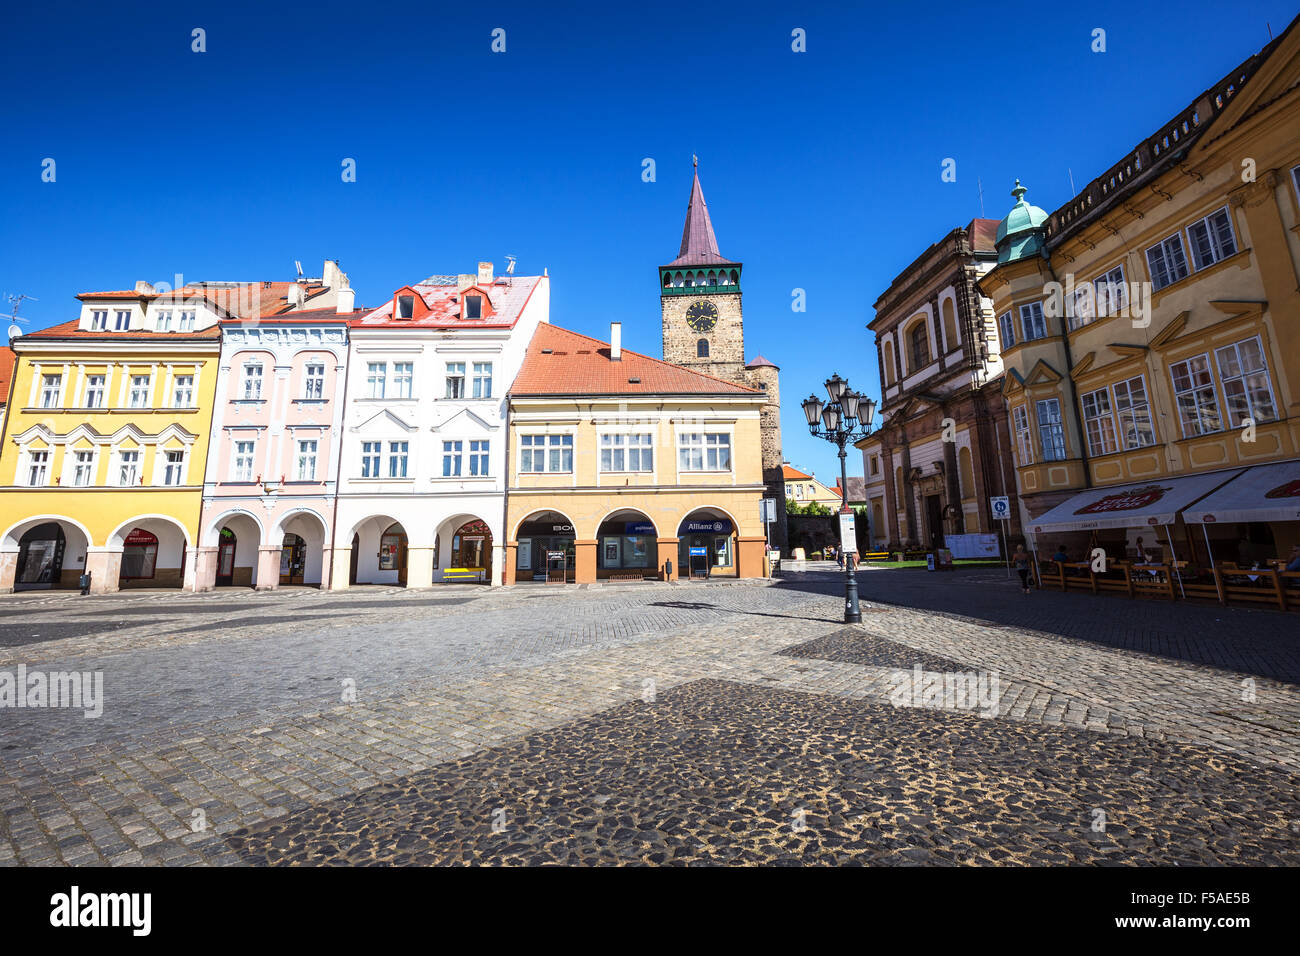 Valdstejnske namesti, (Wallenstein Square), Jicin, Kralovehradecky kraj, Czech Republic Stock Photo